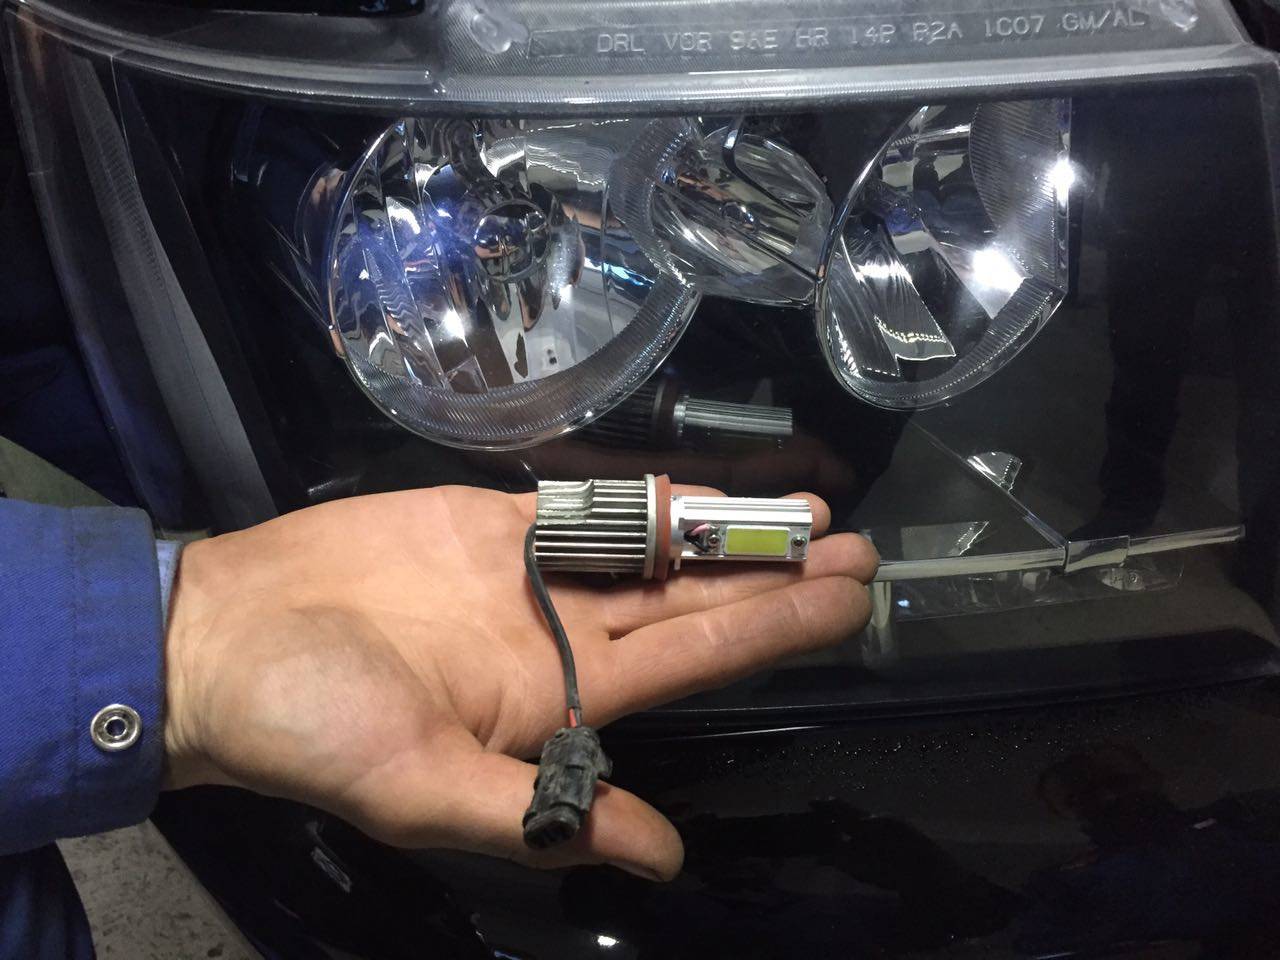 Штраф за светодиоды и led лампы в автомобильной оптике